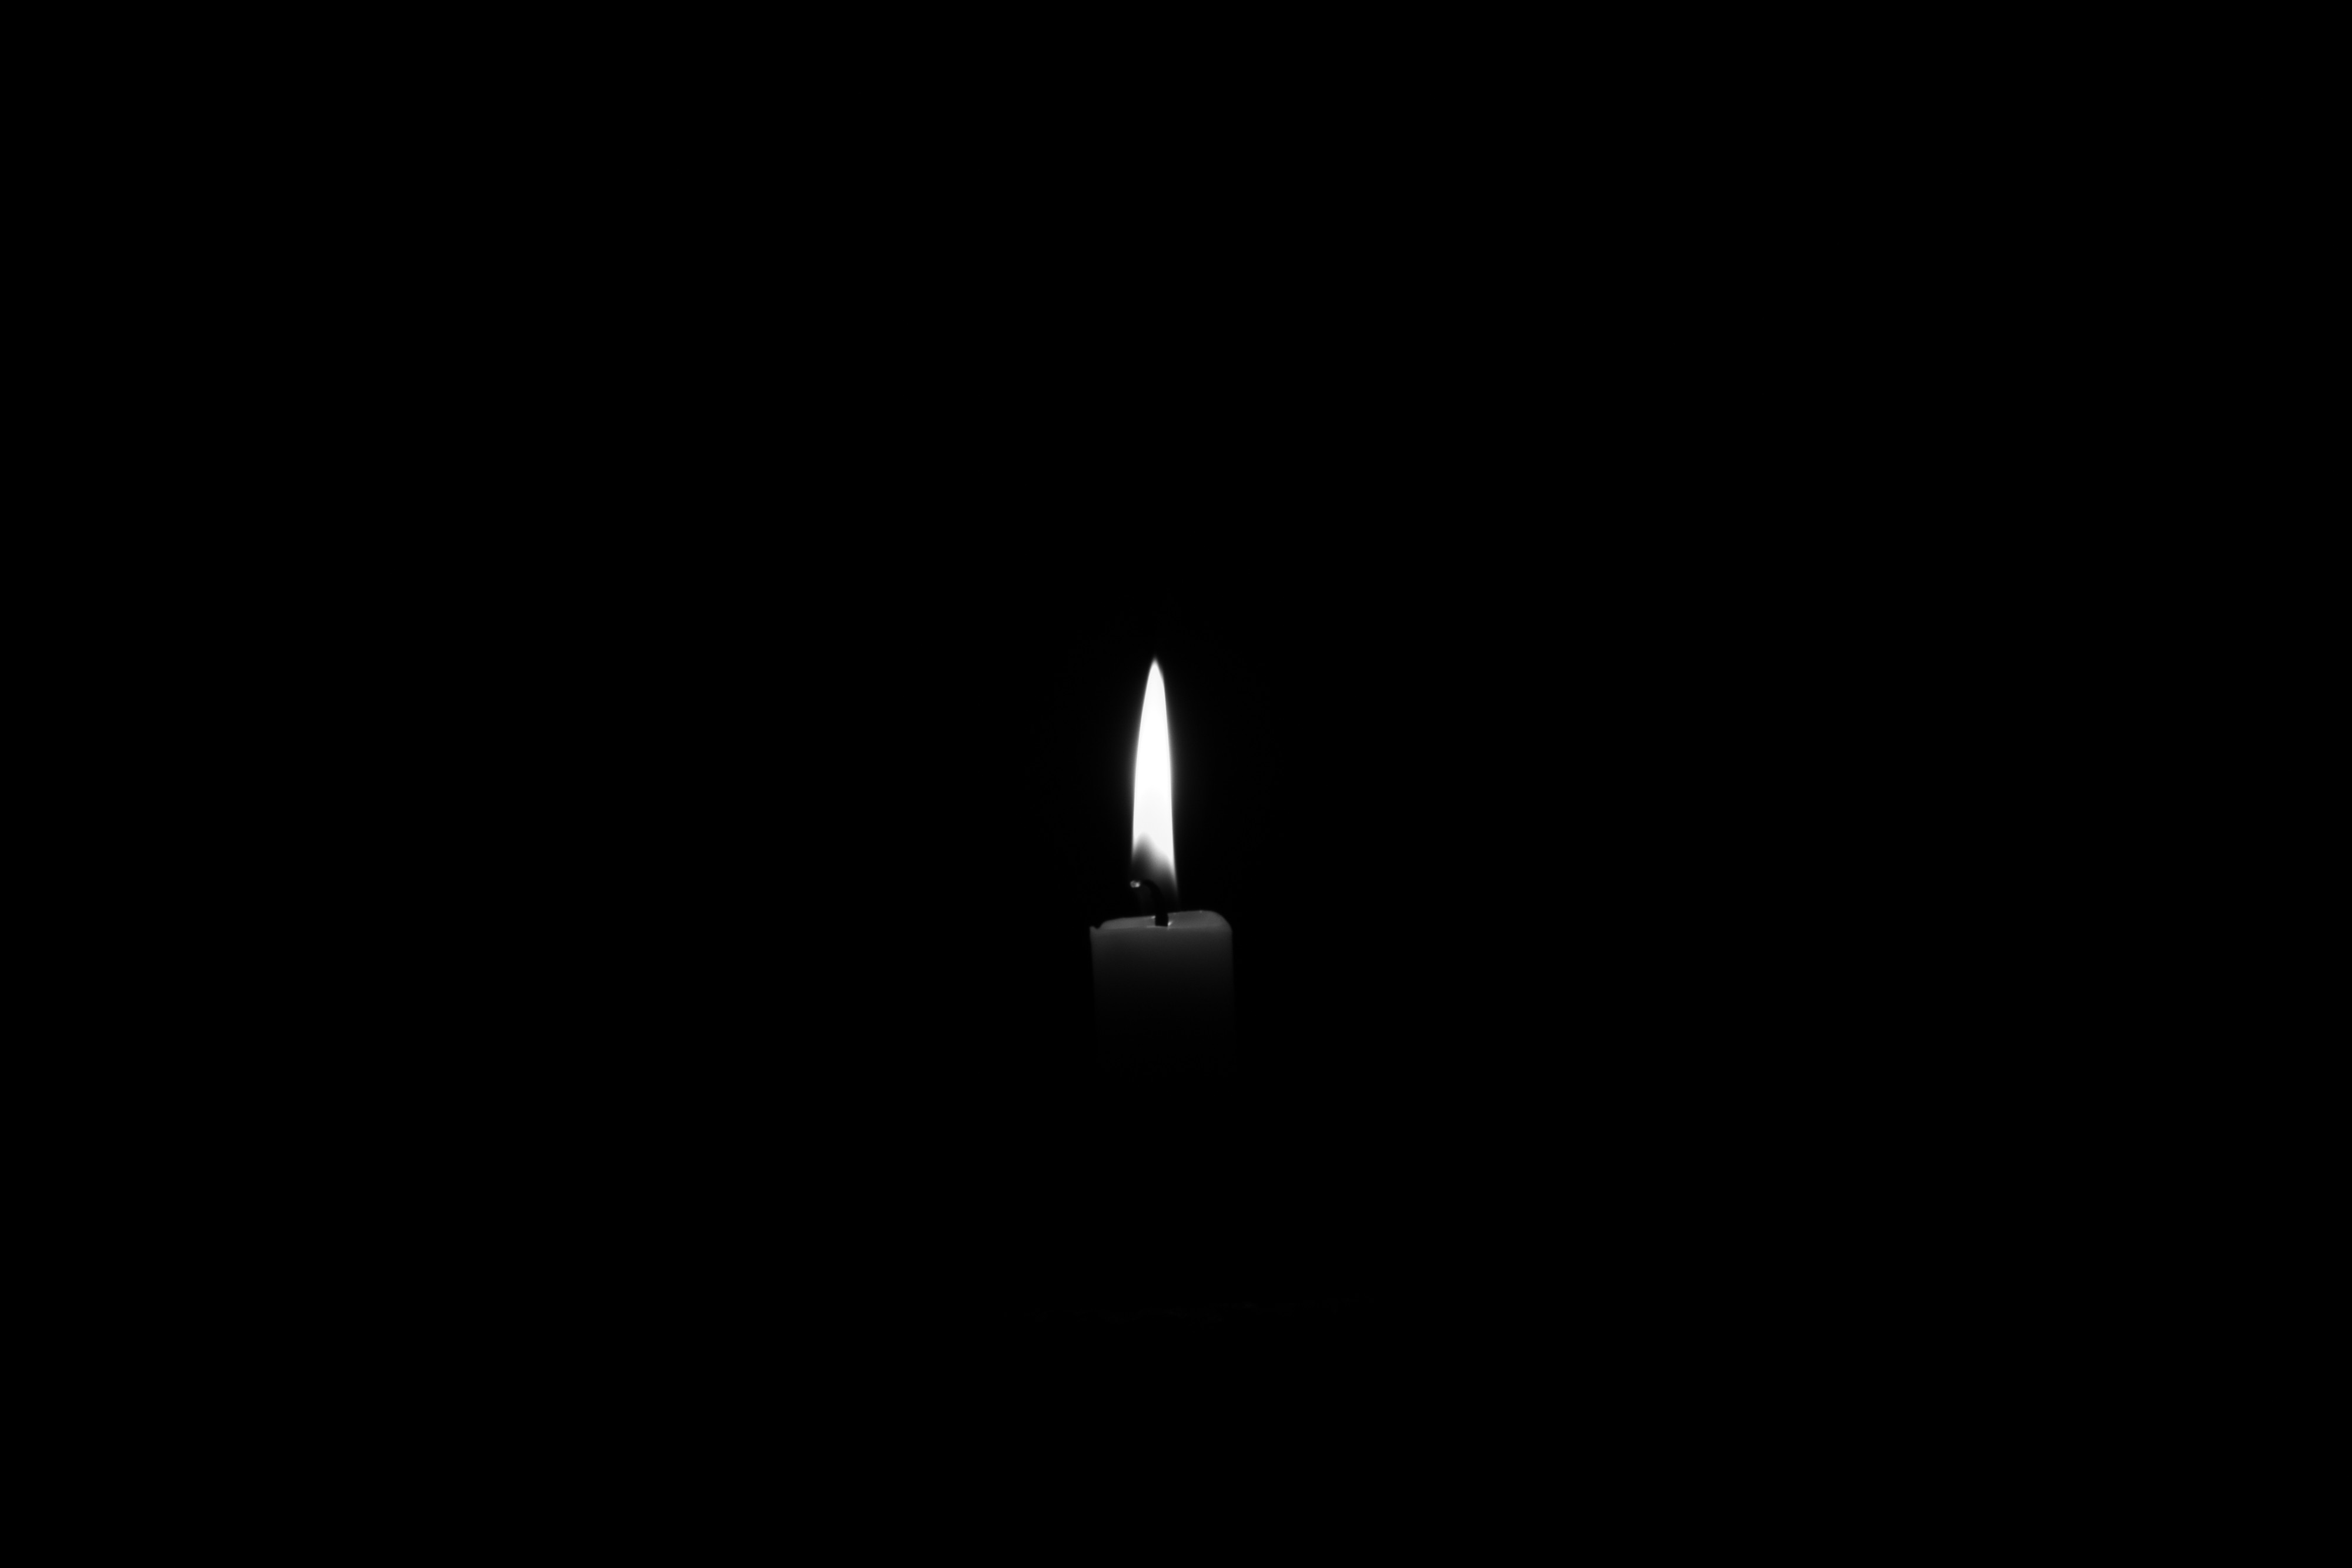 candle, bw, black, flame, chb 2160p